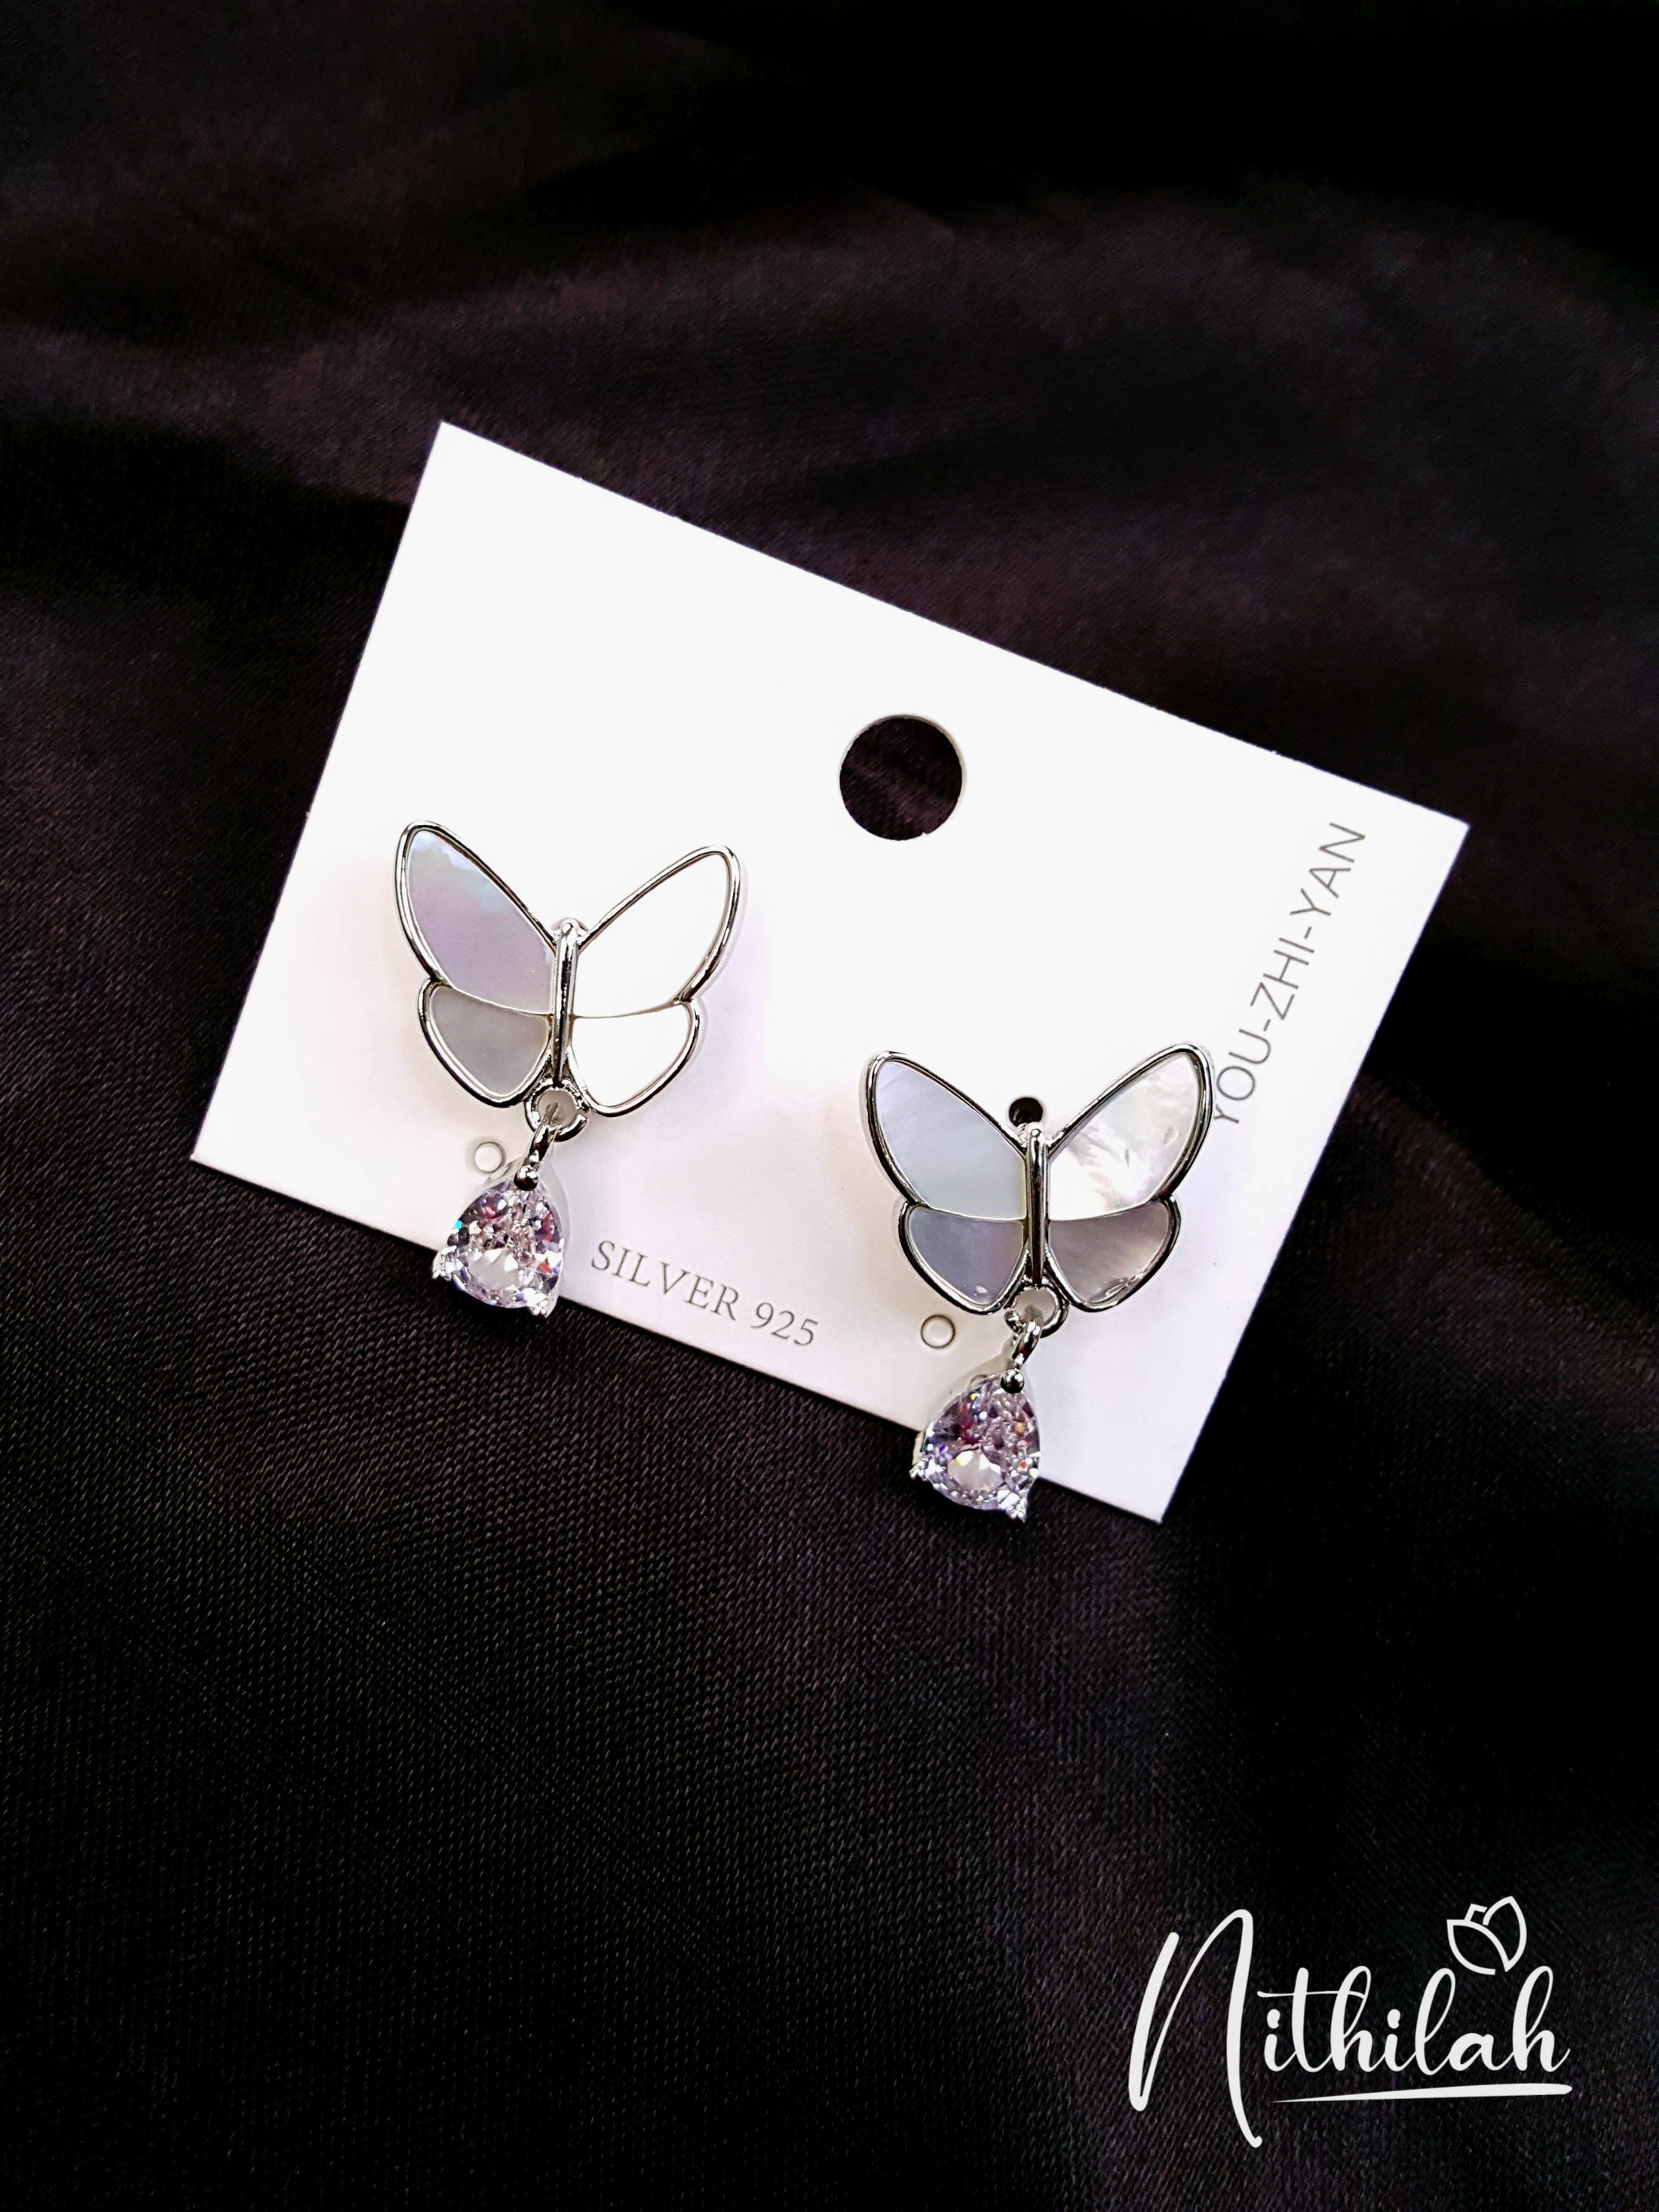 Buy Imitation Jewellery Mother of Pearl Butterfly Silver Earrings NPJE121 Online